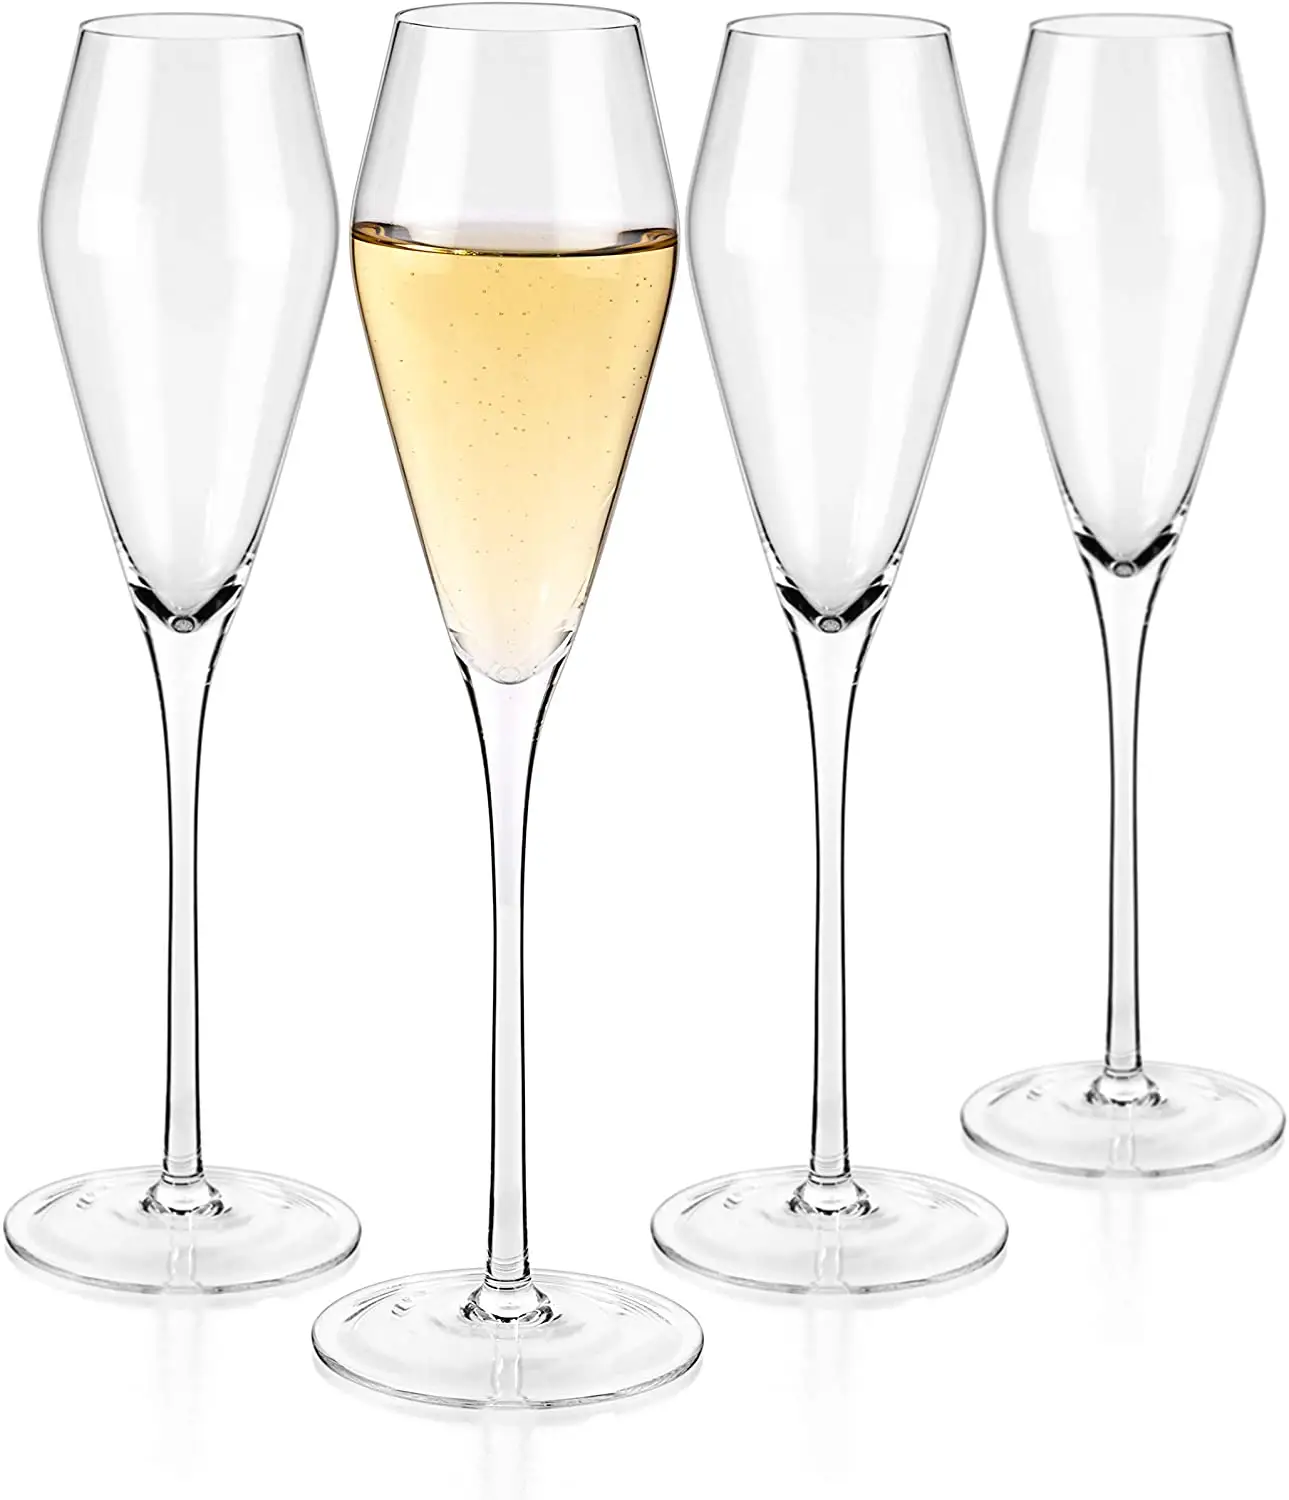 8.5ออนซ์/250มิลลิลิตรแชมเปญคริสตัลแก้วทิวลิปรูปร่างที่ทันสมัยหรูหรา Sparking แก้วไวน์,มือเป่า-ของขวัญสำหรับงานแต่งงาน